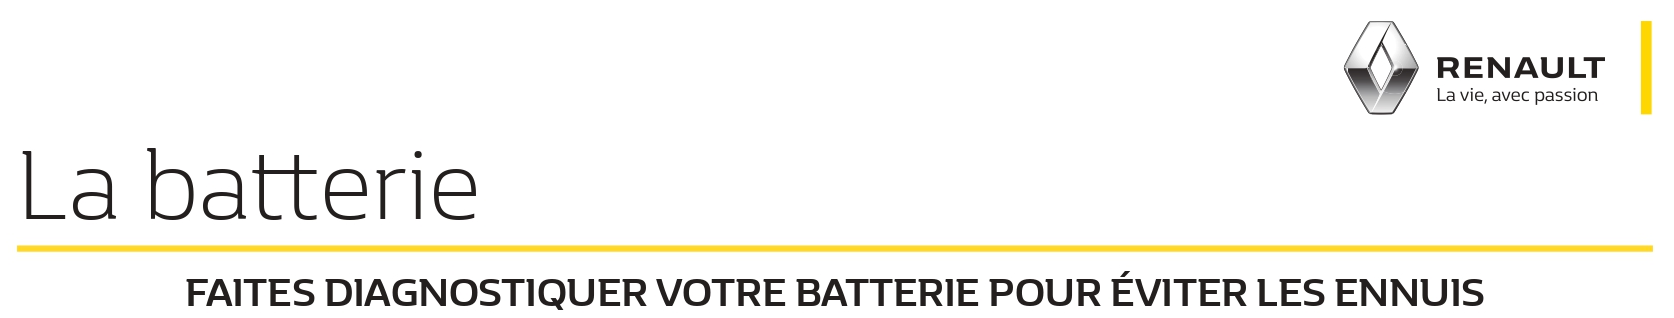 La batterie Renault